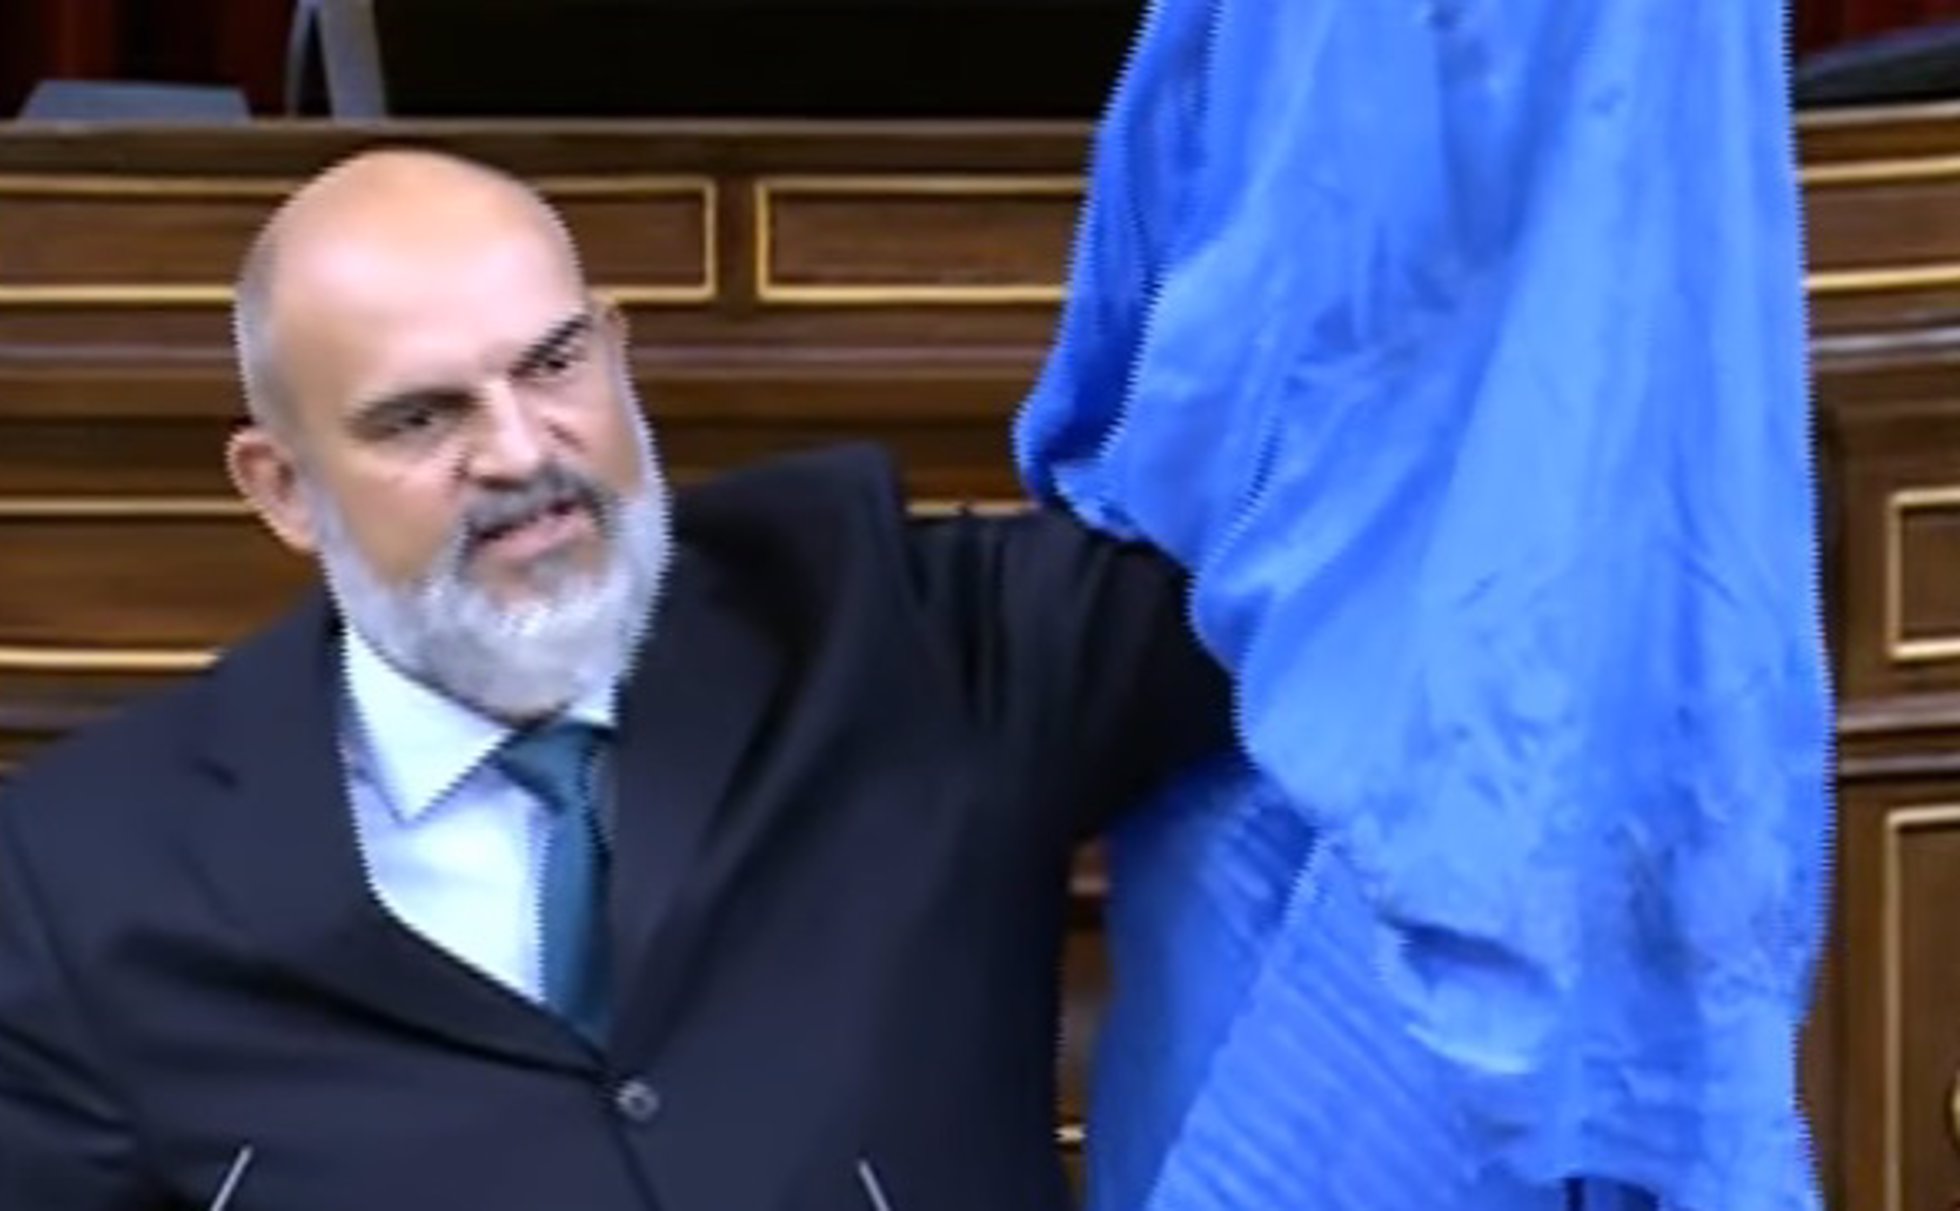 El diputado de Vox Víctor Sánchez del Real exhibe un burka en el hemiciclo del Congreso.